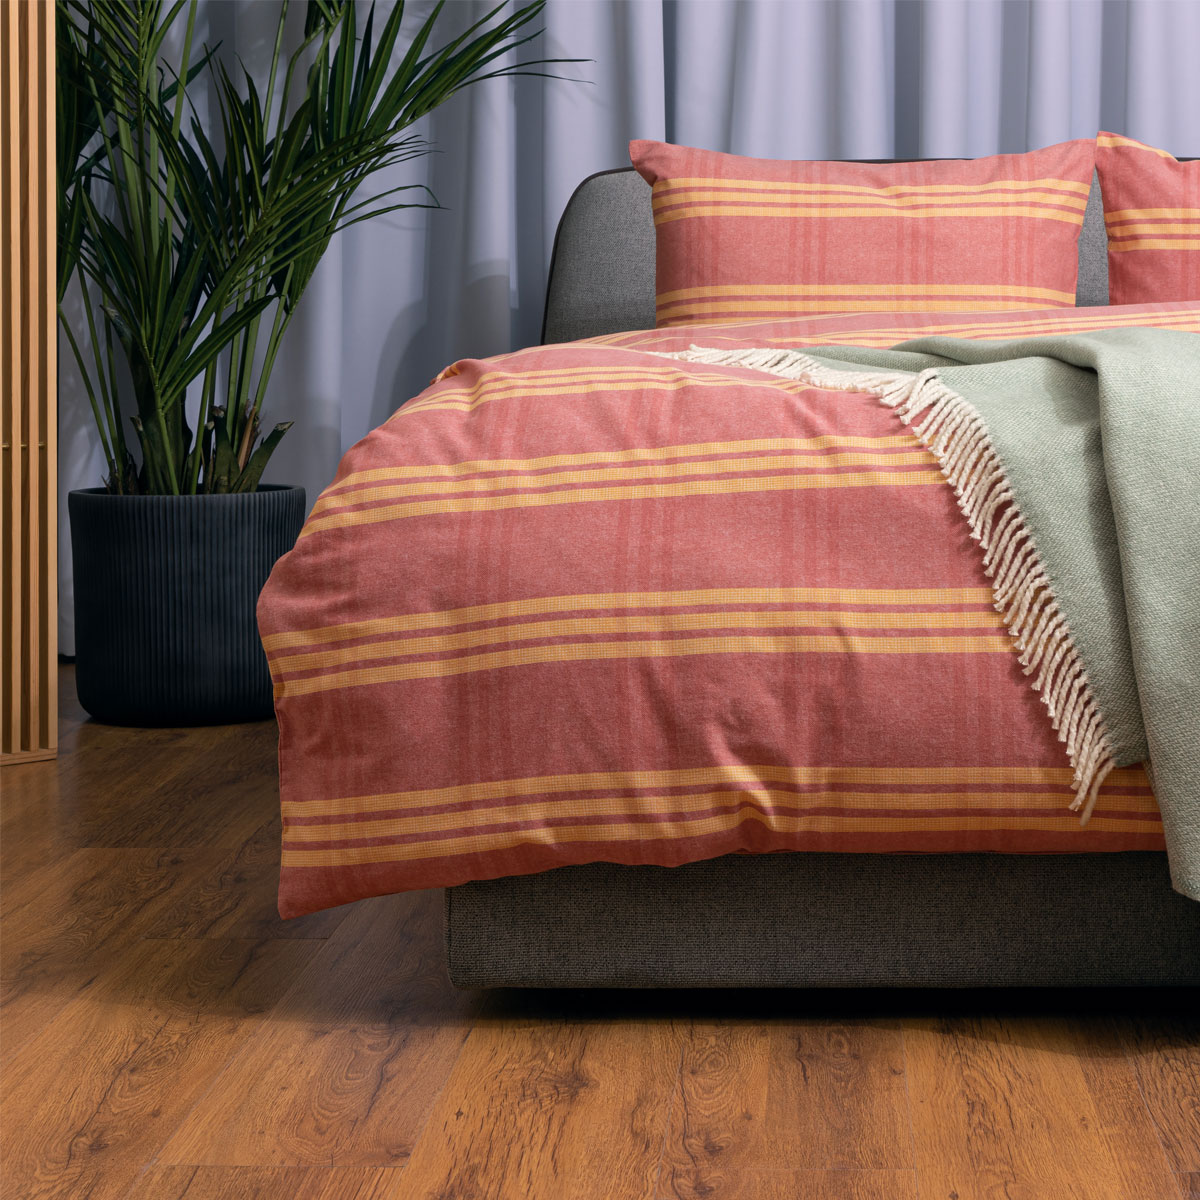 Комплект постельного белья 1,5-спальный Pappel red-yellow stripe Pappel SYXUR355AMT/150200S, цвет розовый SYXUR355AMT/150200S - фото 1